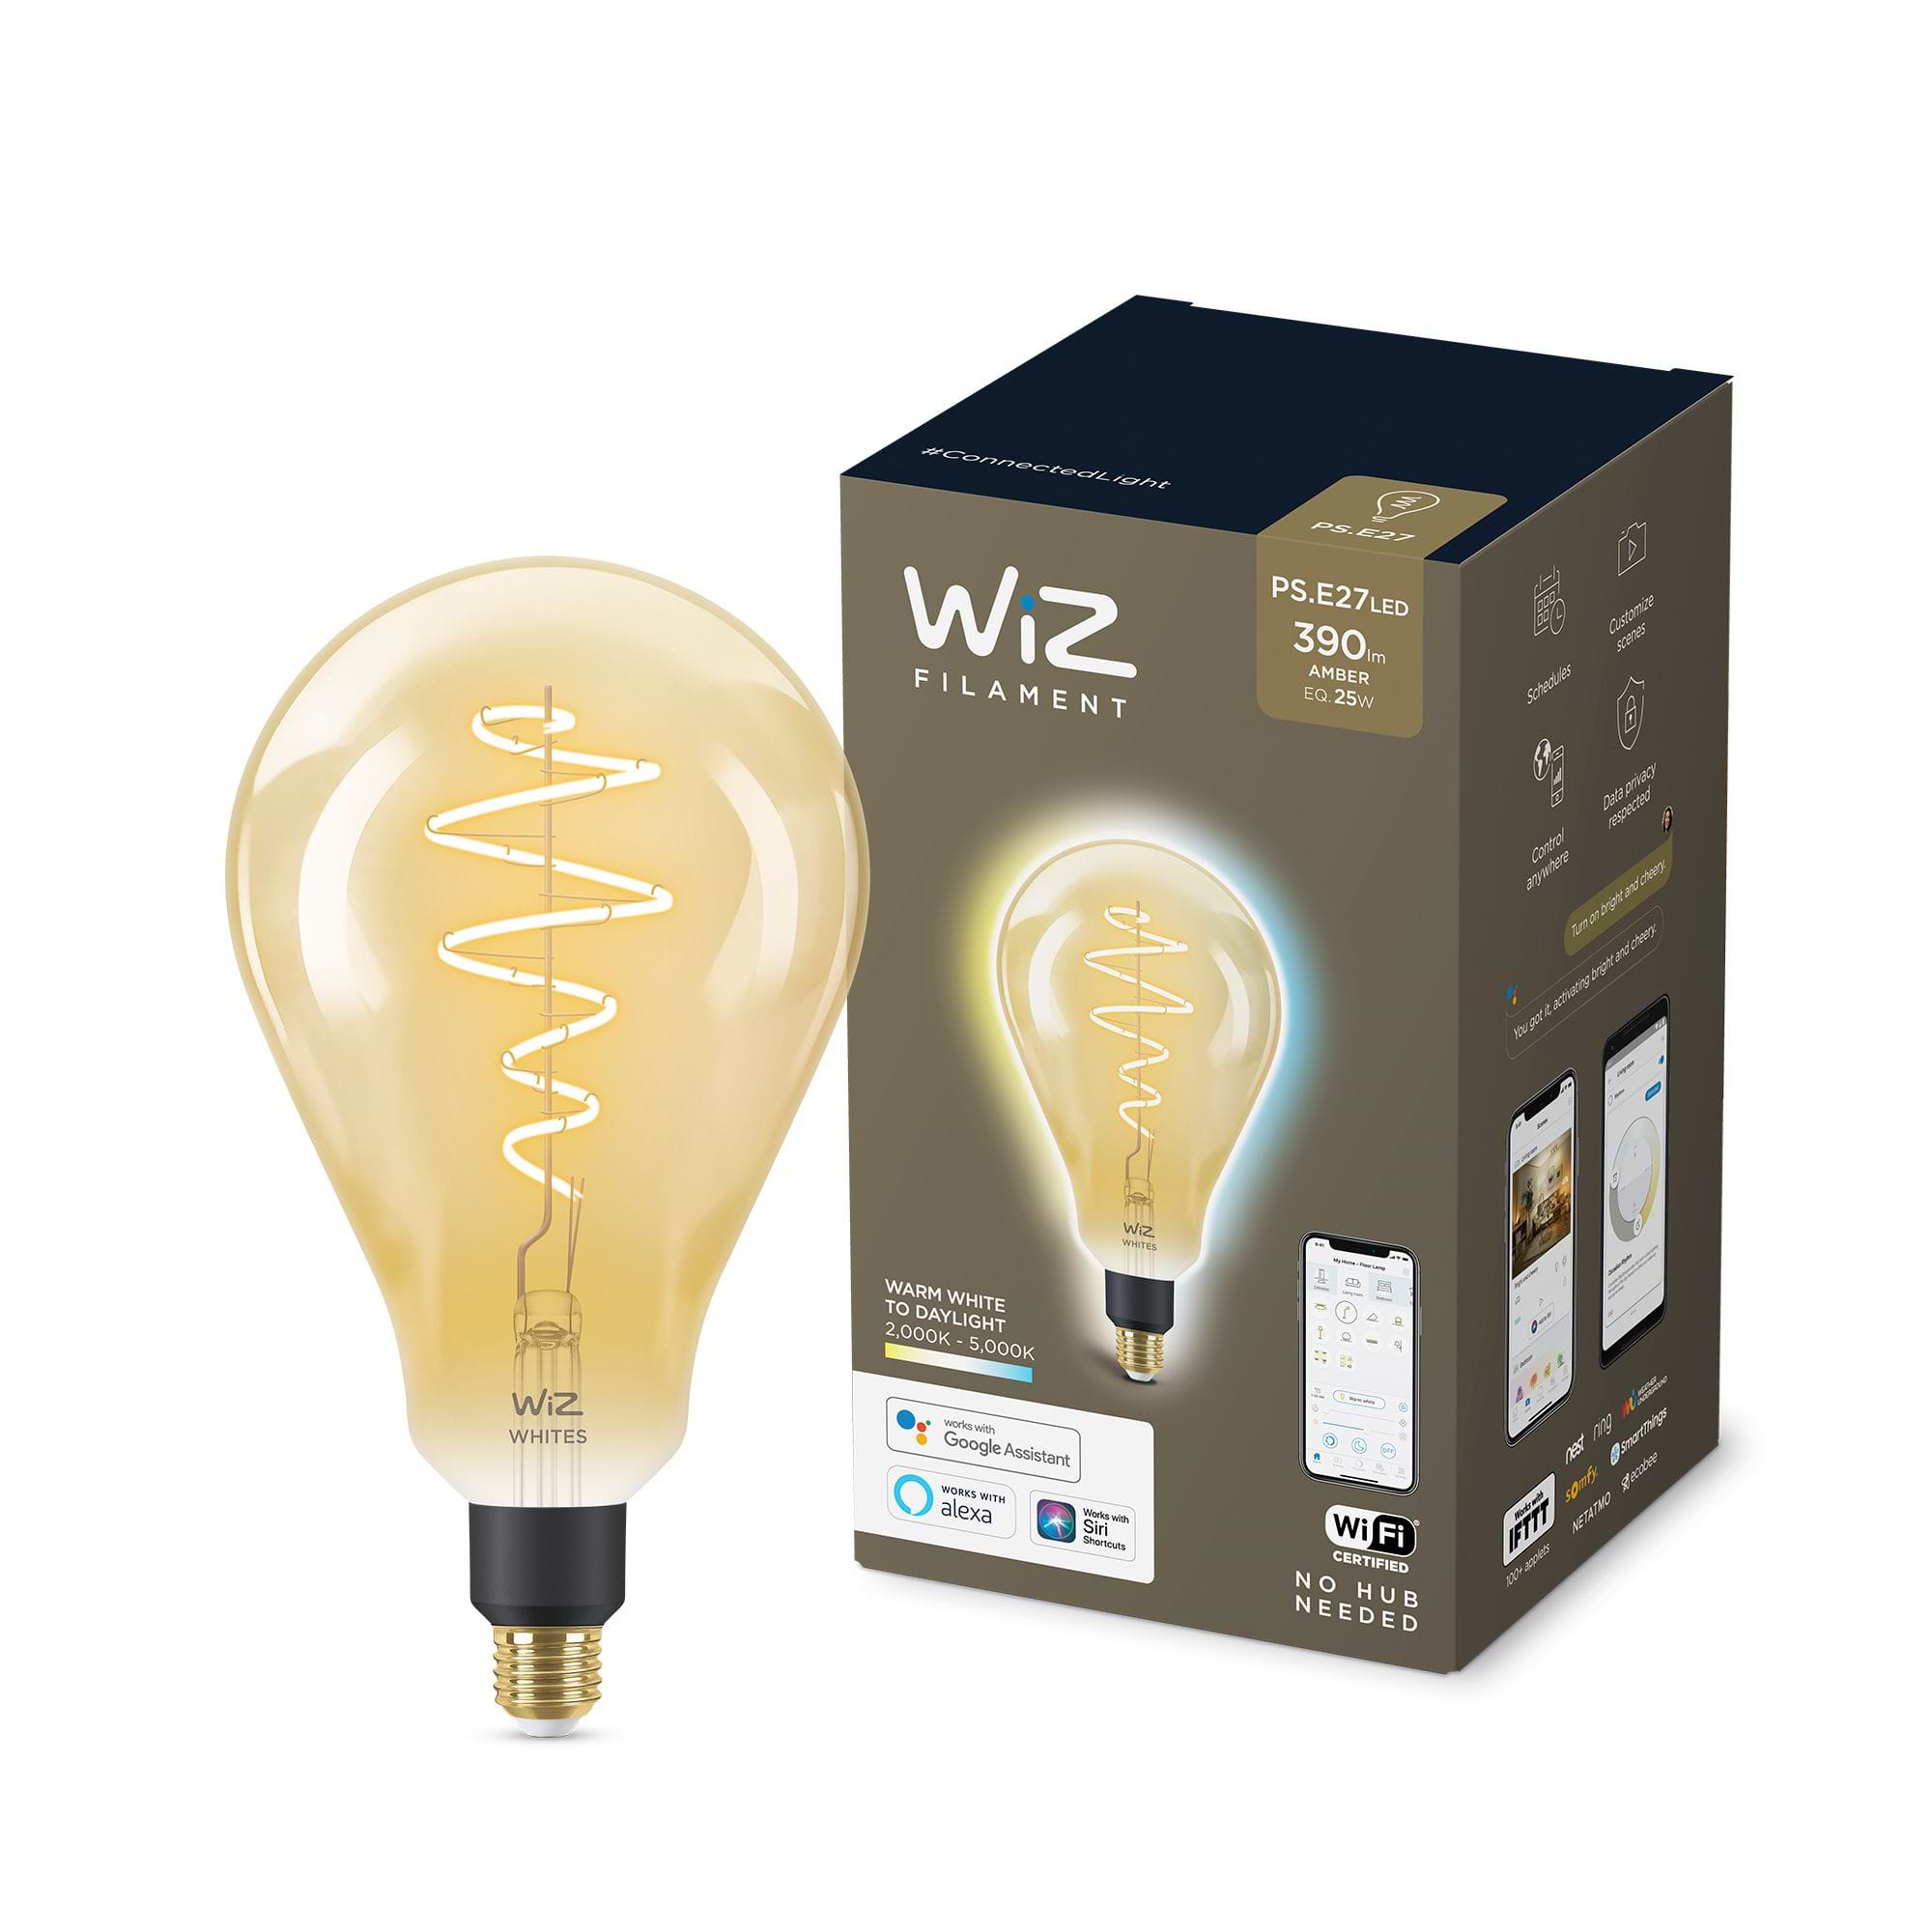 Wiz Wi-Fi BLE 25W PS160 E27 920-50 Amb 1CT/2 נורת פחם